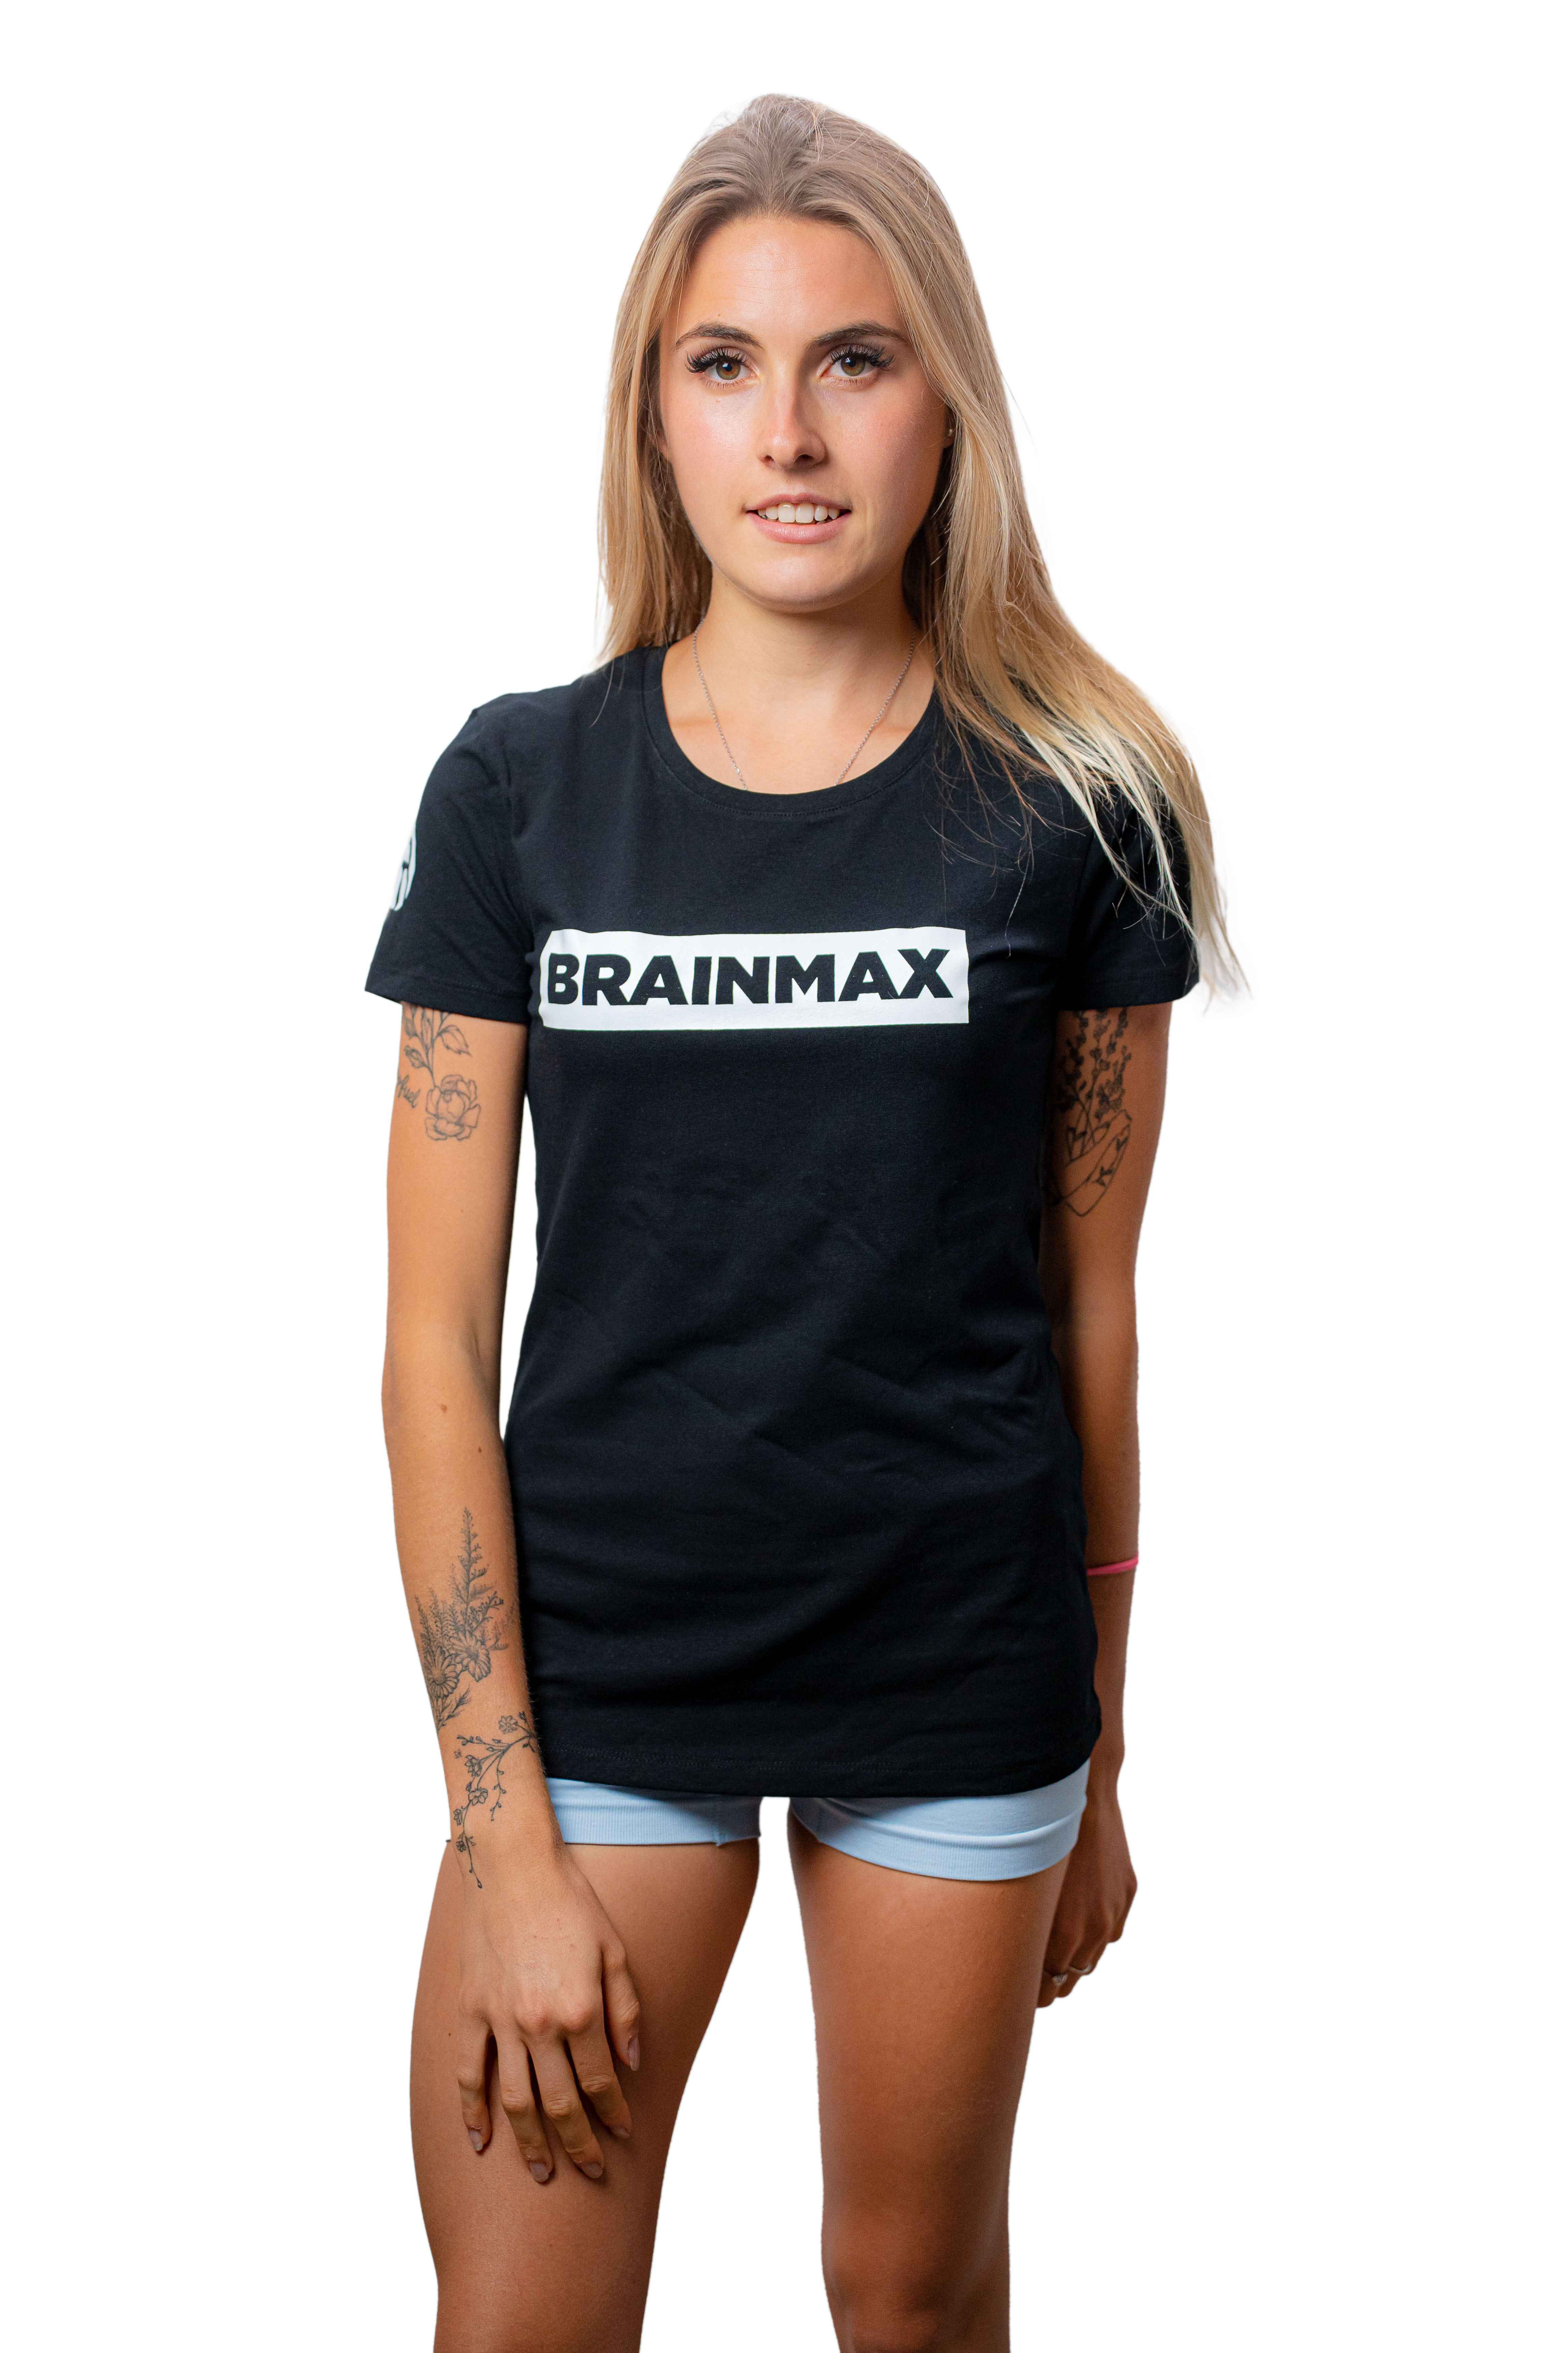 E-shop Tričko BrainMax s pruhom dámske čierne Veľkosť: M